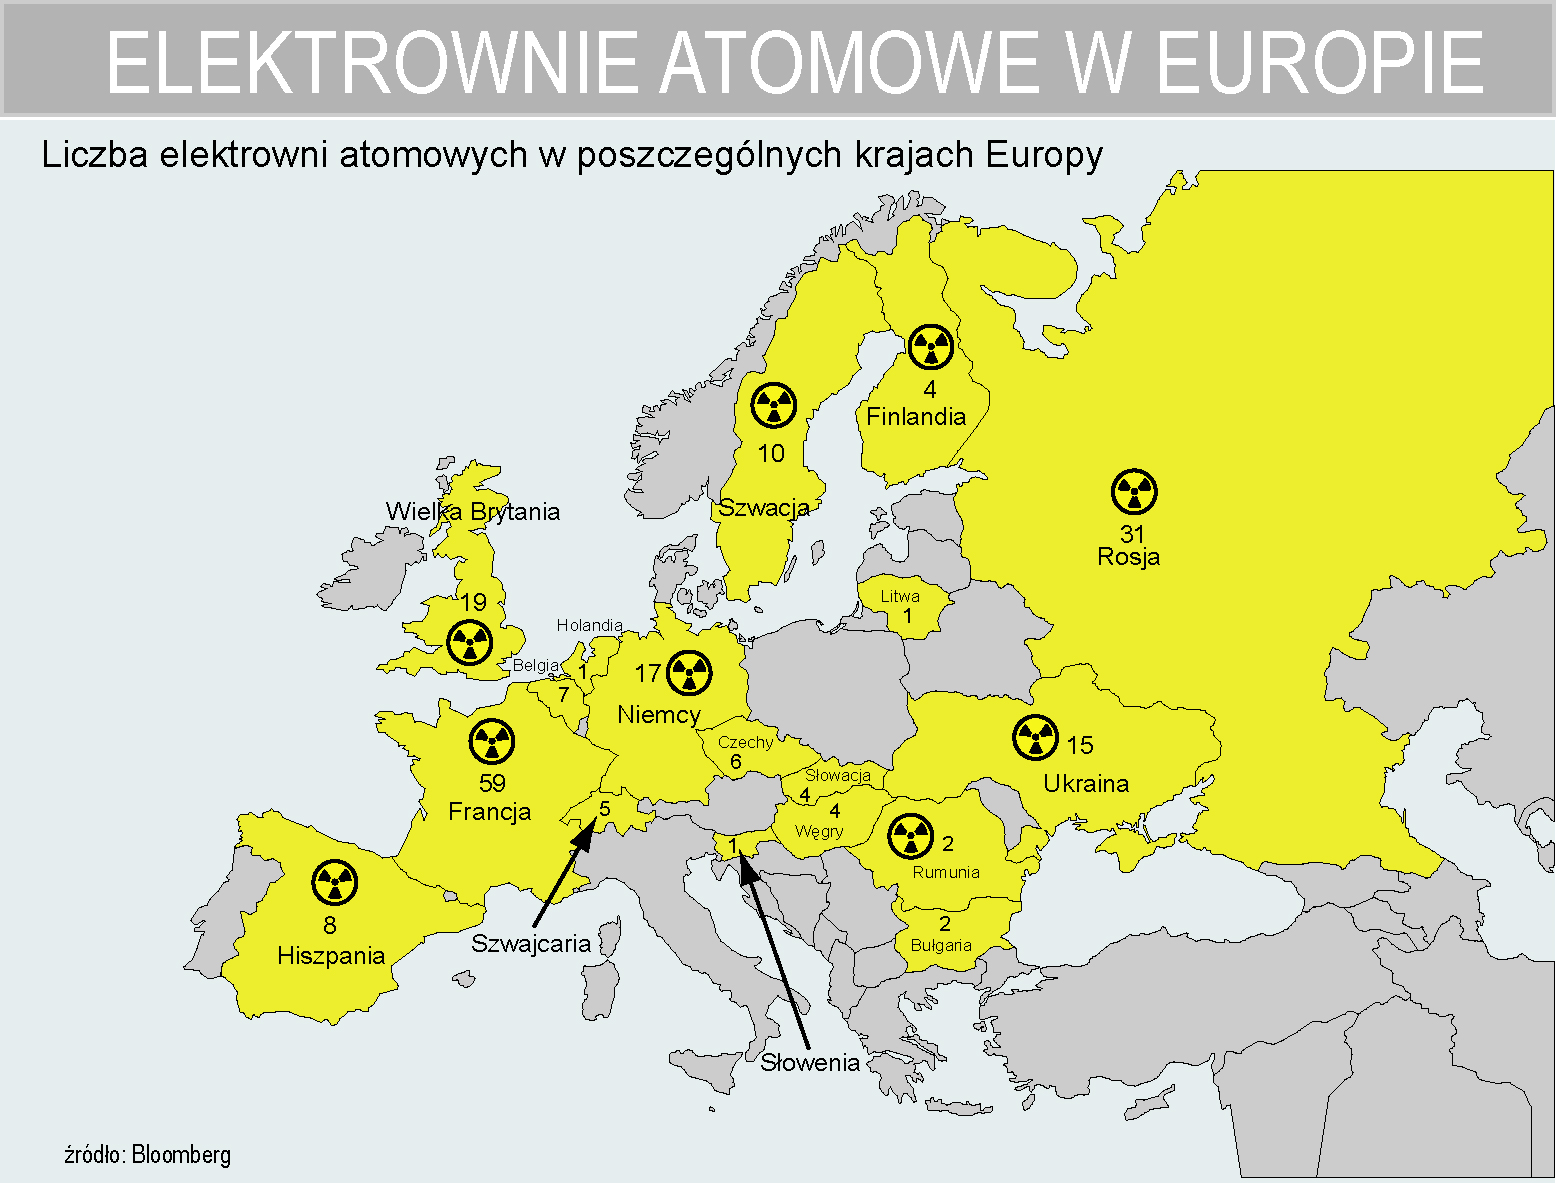  na Ziemi jest 450 reaktorów jądrowych - Forsal.pl